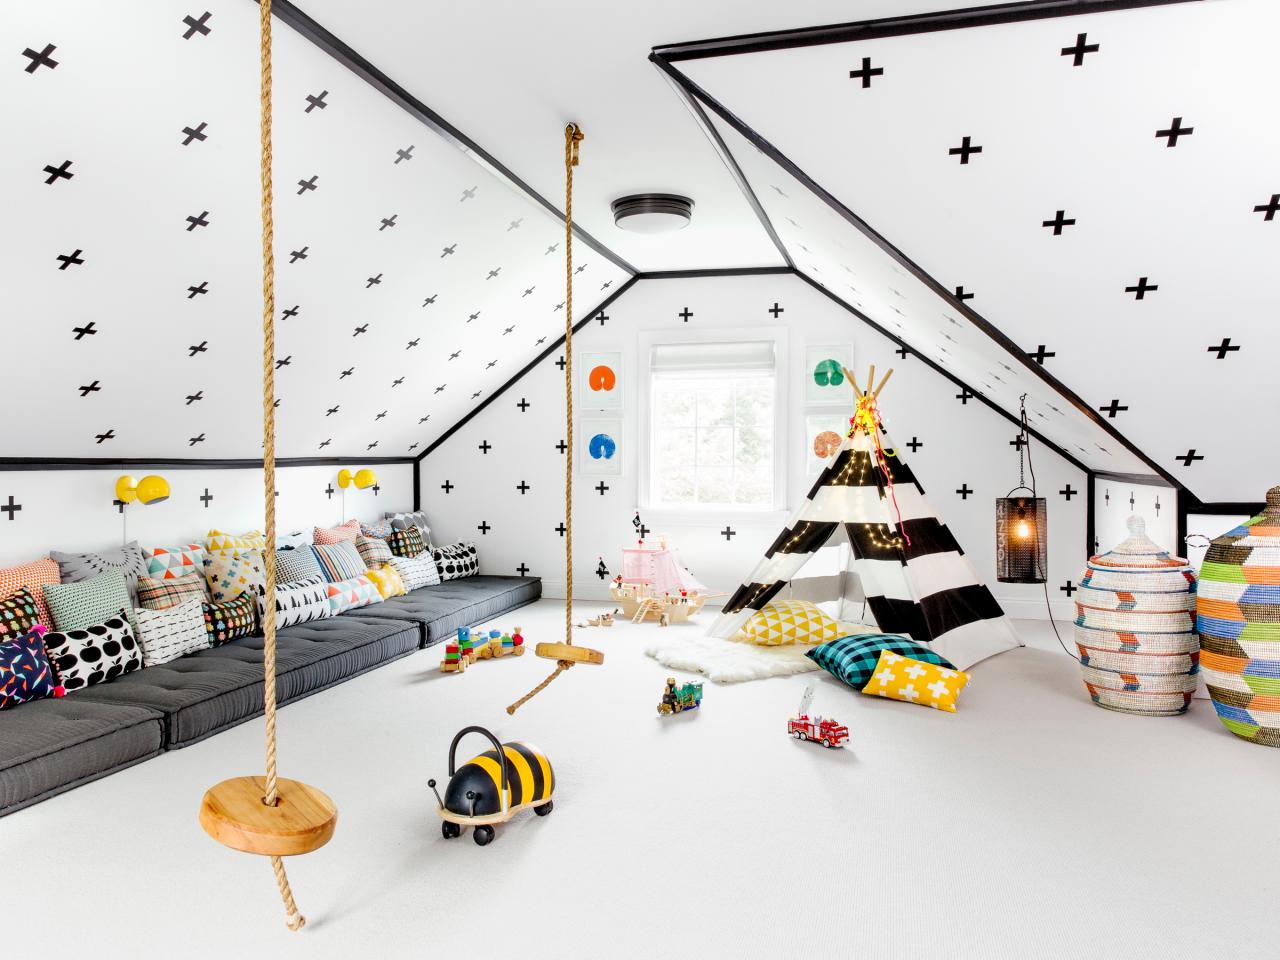 Interior design for children’s rooms